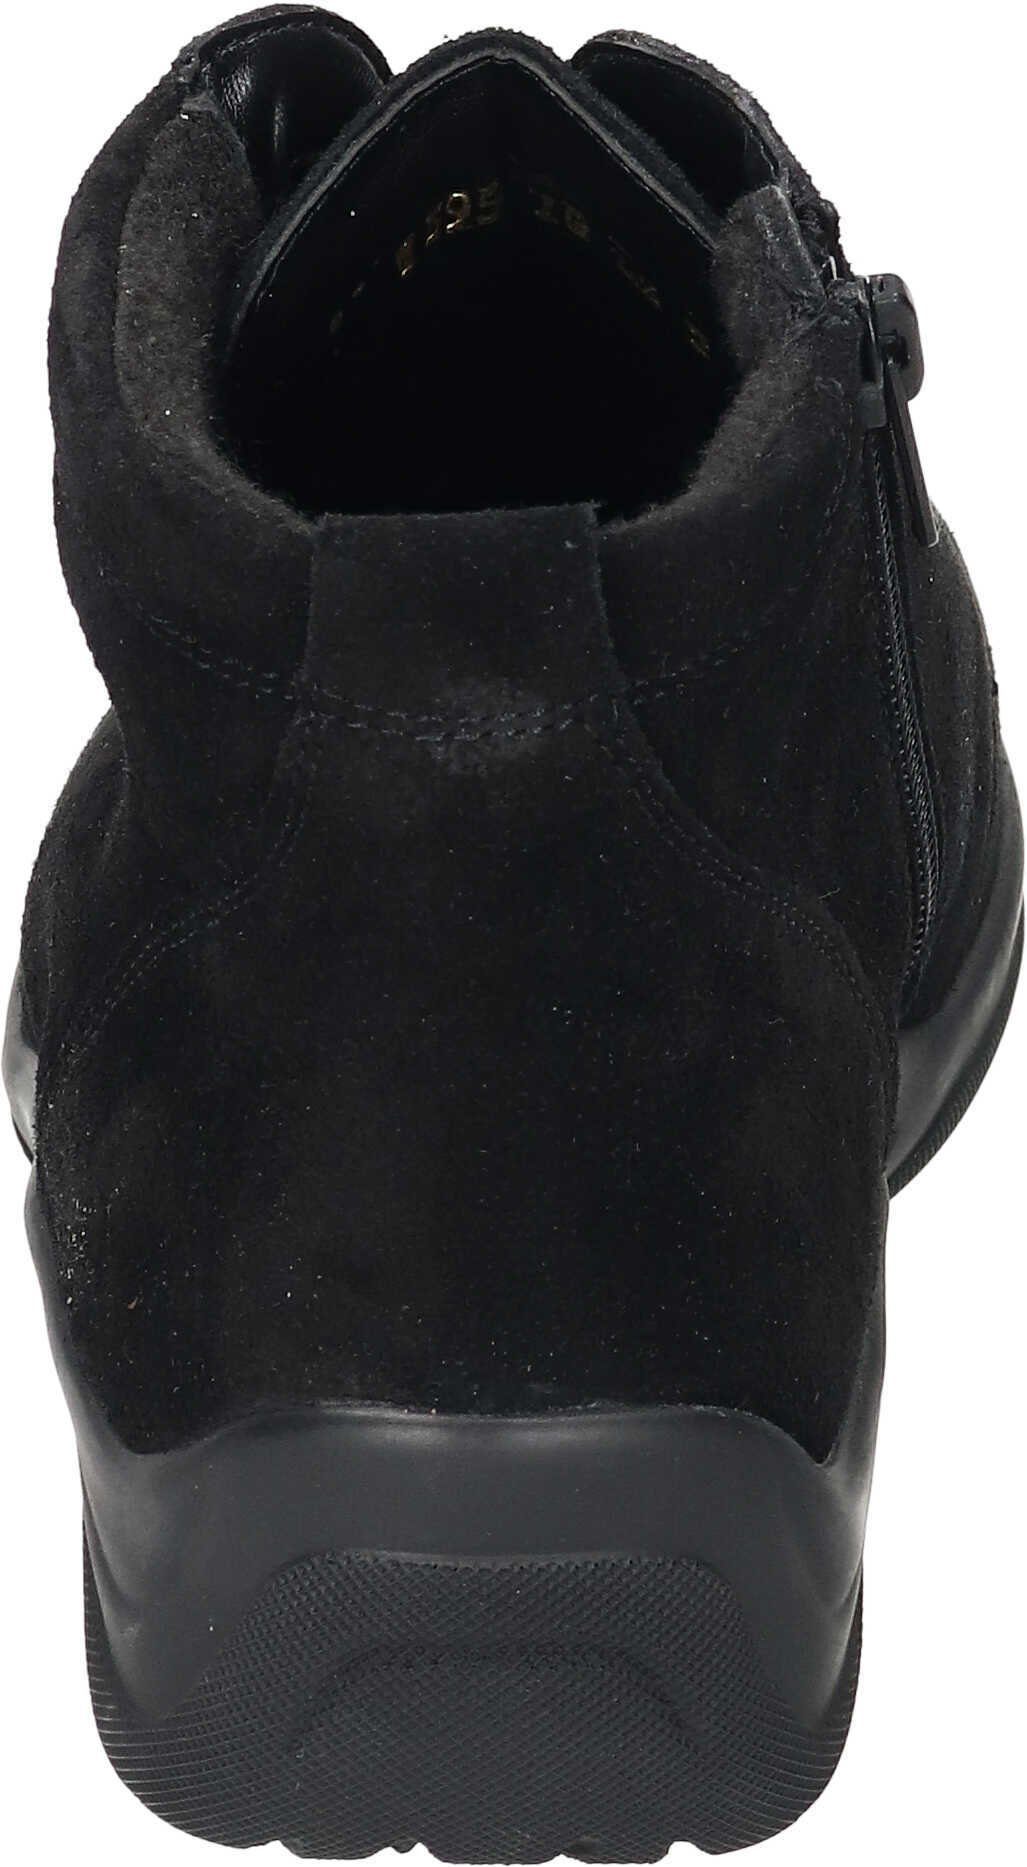 Waldläufer Boots Stiefel aus schwarz Veloursleder